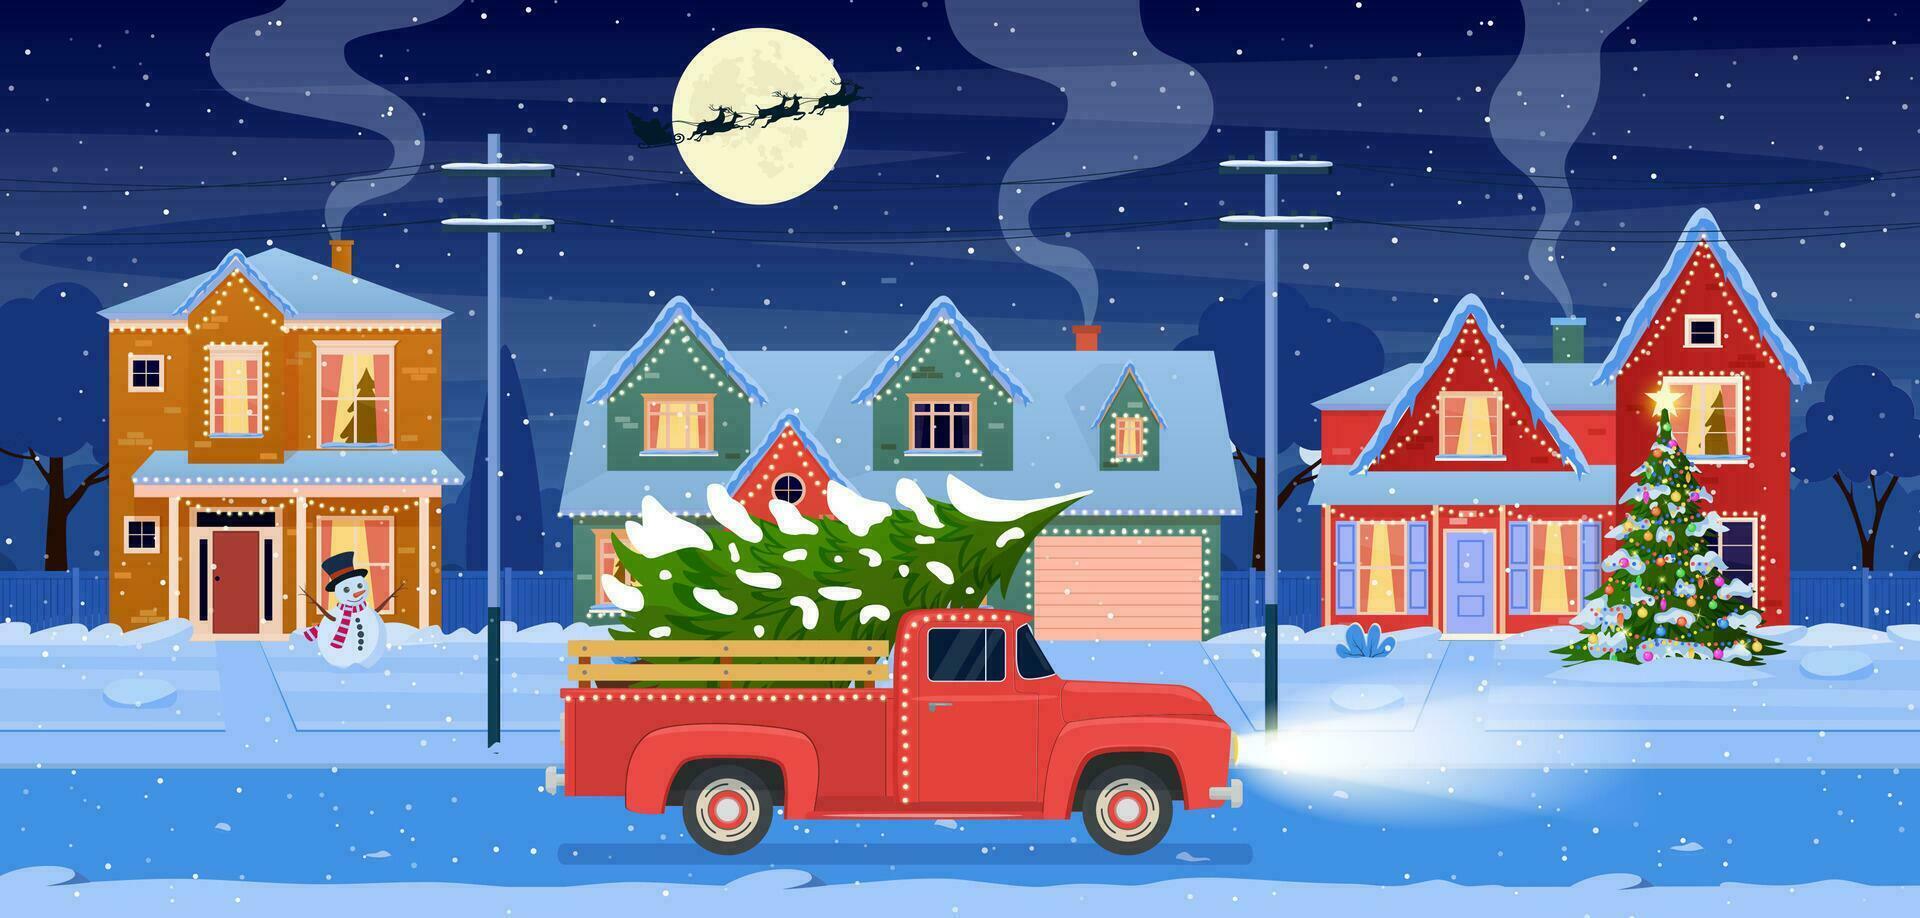 Wohn Häuser mit Weihnachten Dekoration beim Nacht. Weihnachten Landschaft Karte Design von retro Auto mit Geschenkbox und Weihnachten Baum. Hintergrund mit Mond und das Santa Klaus. Vektor Illustration